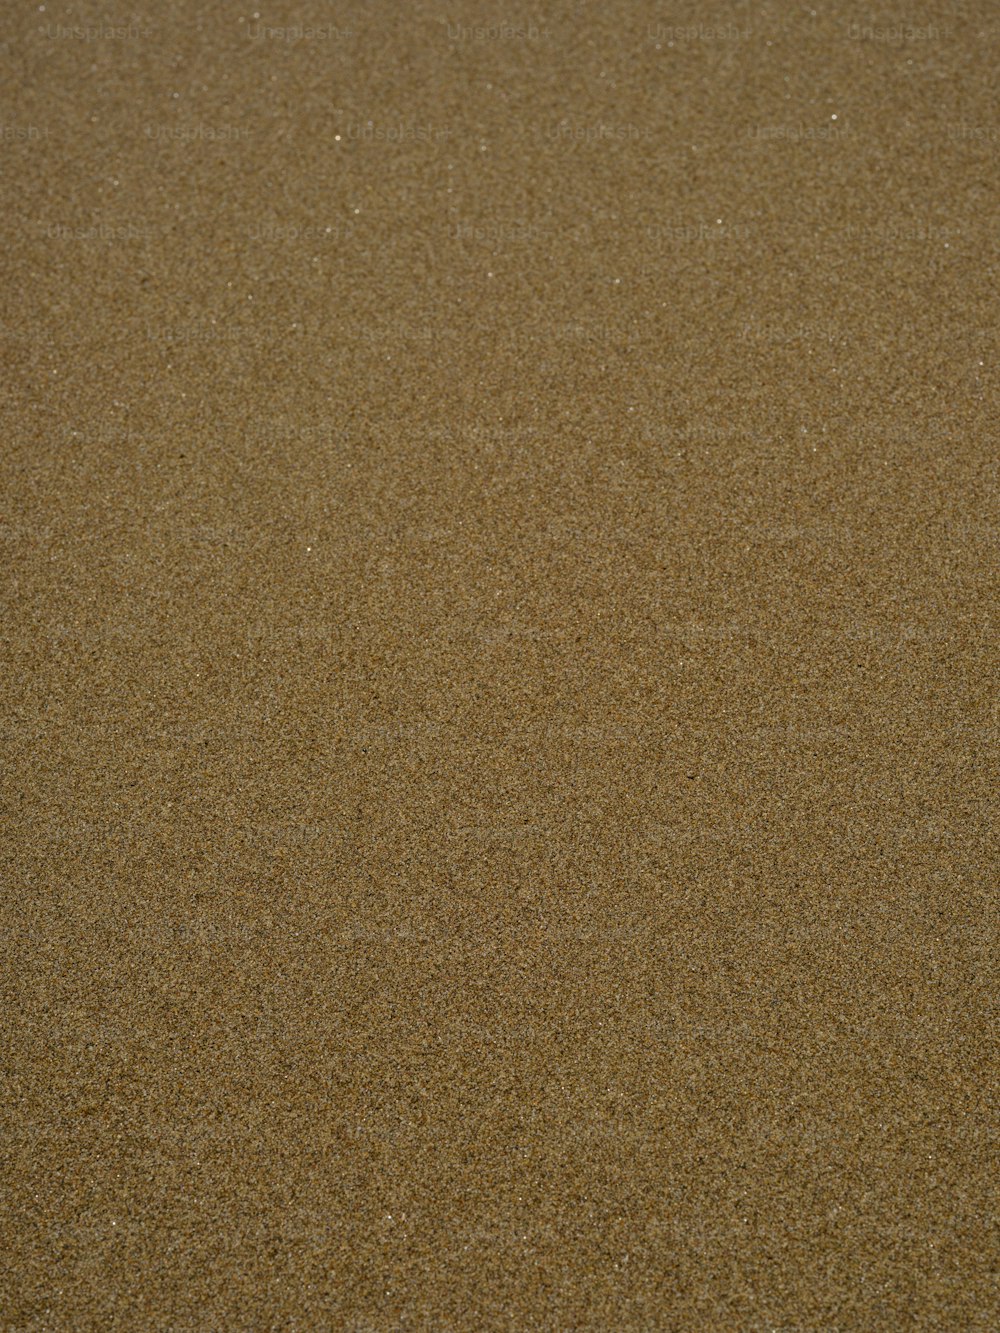 새가 해변의 모래에 서 있다